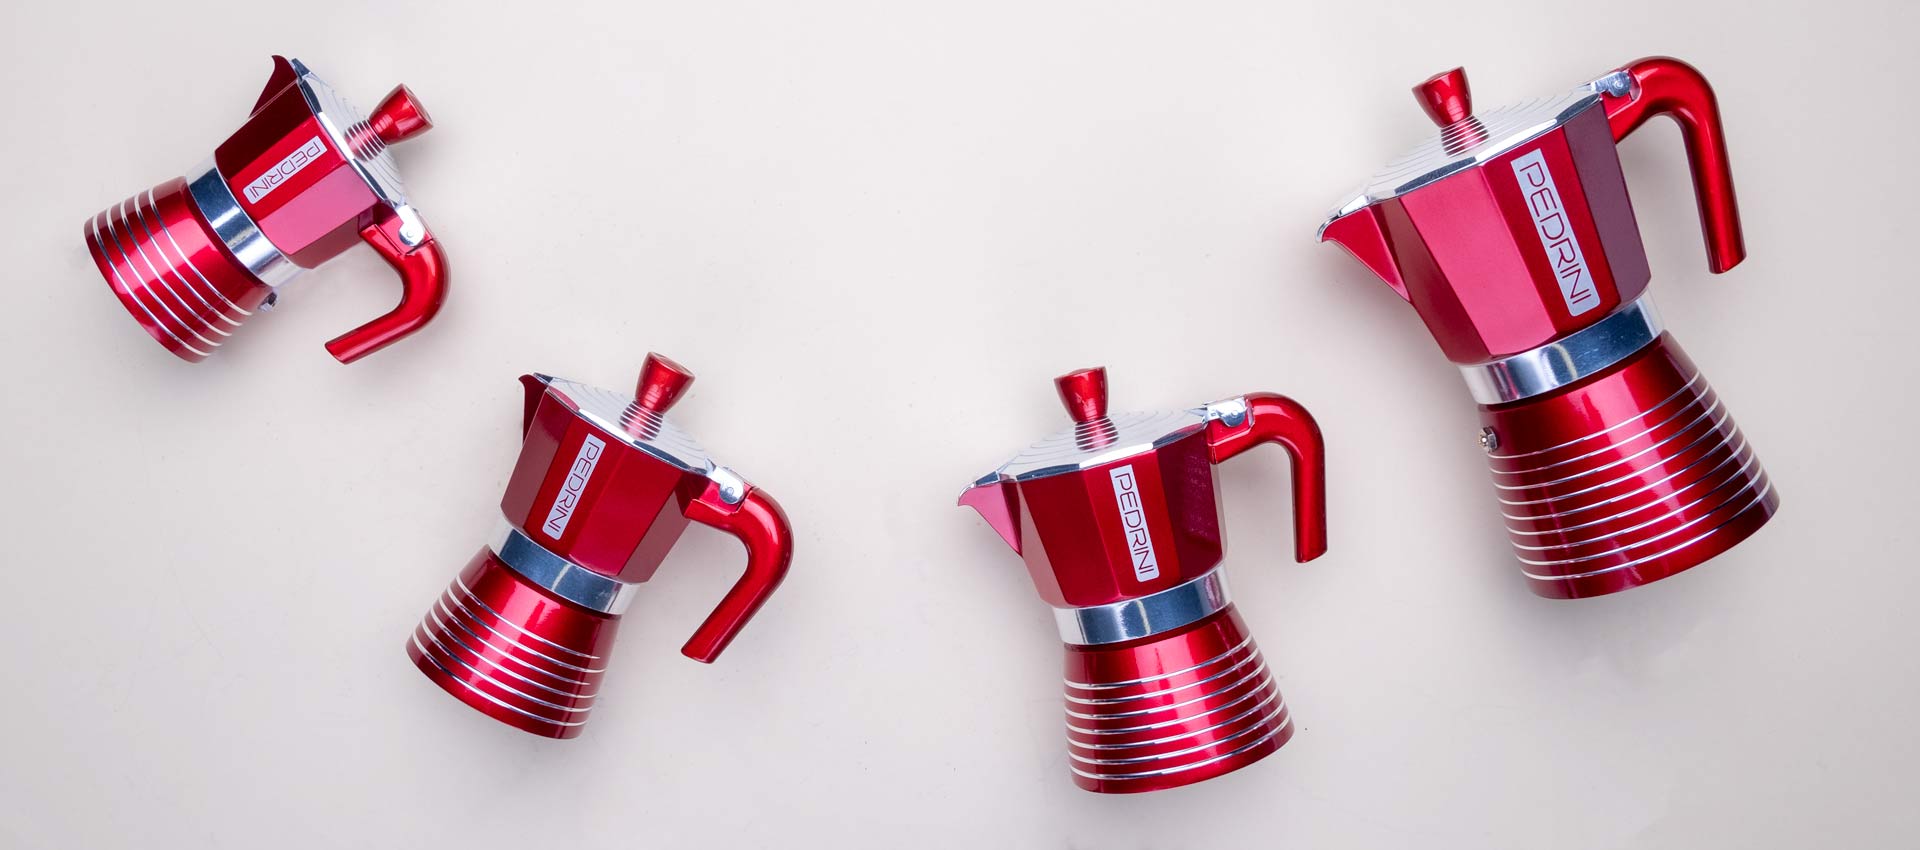 Ấm pha cà phê PEDRINI Infinity Passion - Aluminium - Màu Đỏ - 1 cup /2 cup /3 cup /6 cup [ Hàng Chính Hãng